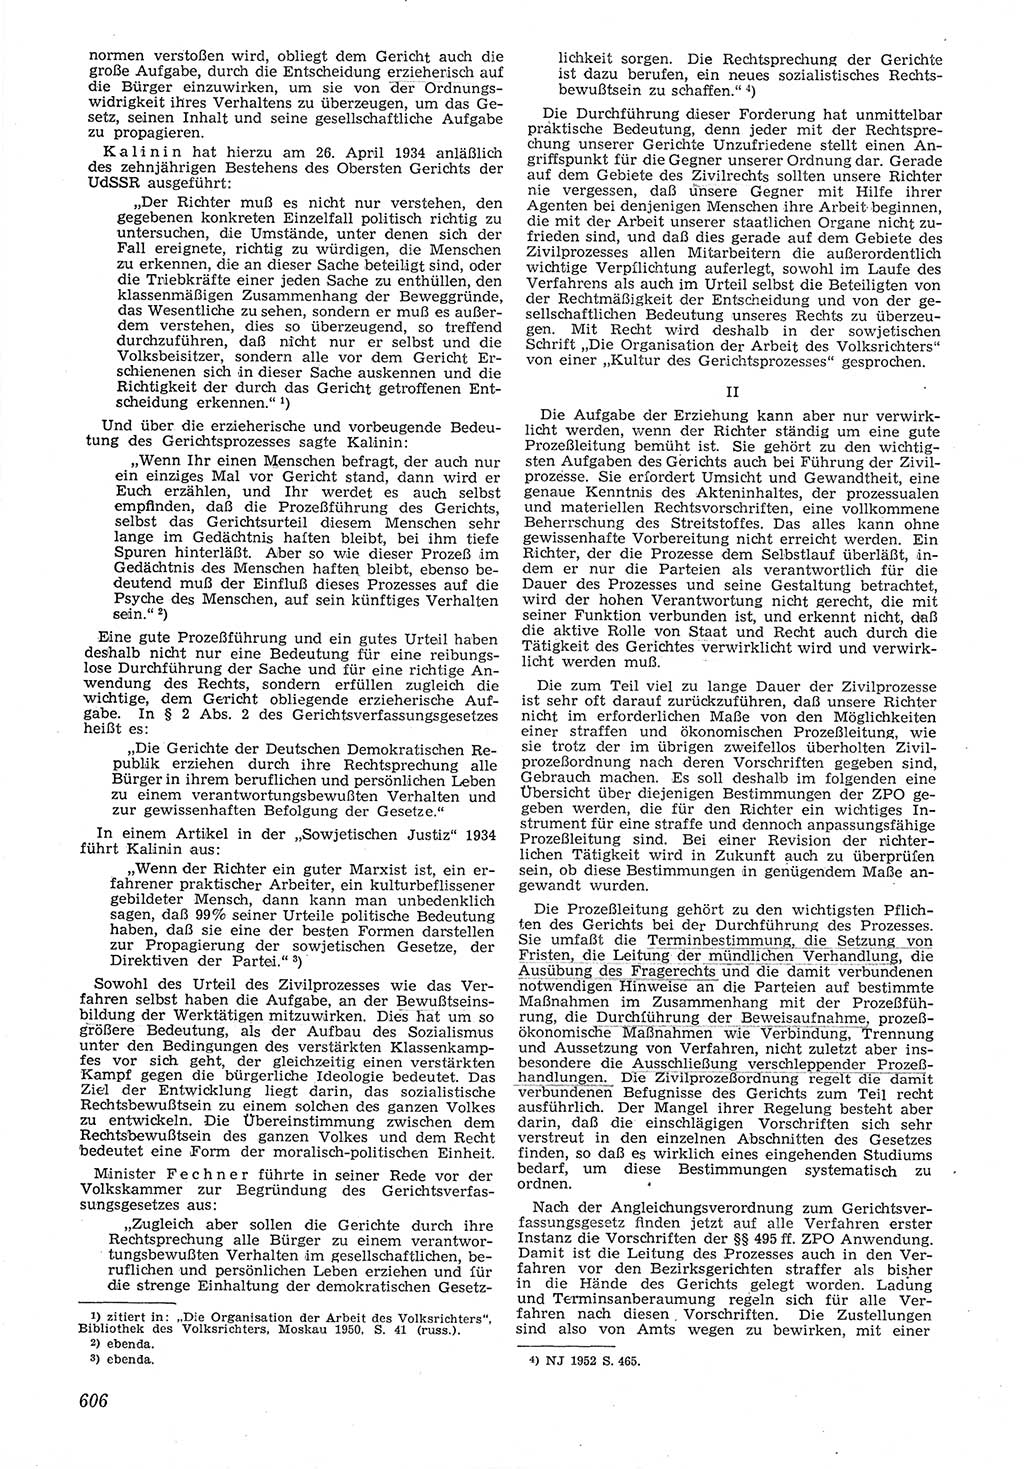 Neue Justiz (NJ), Zeitschrift für Recht und Rechtswissenschaft [Deutsche Demokratische Republik (DDR)], 6. Jahrgang 1952, Seite 606 (NJ DDR 1952, S. 606)